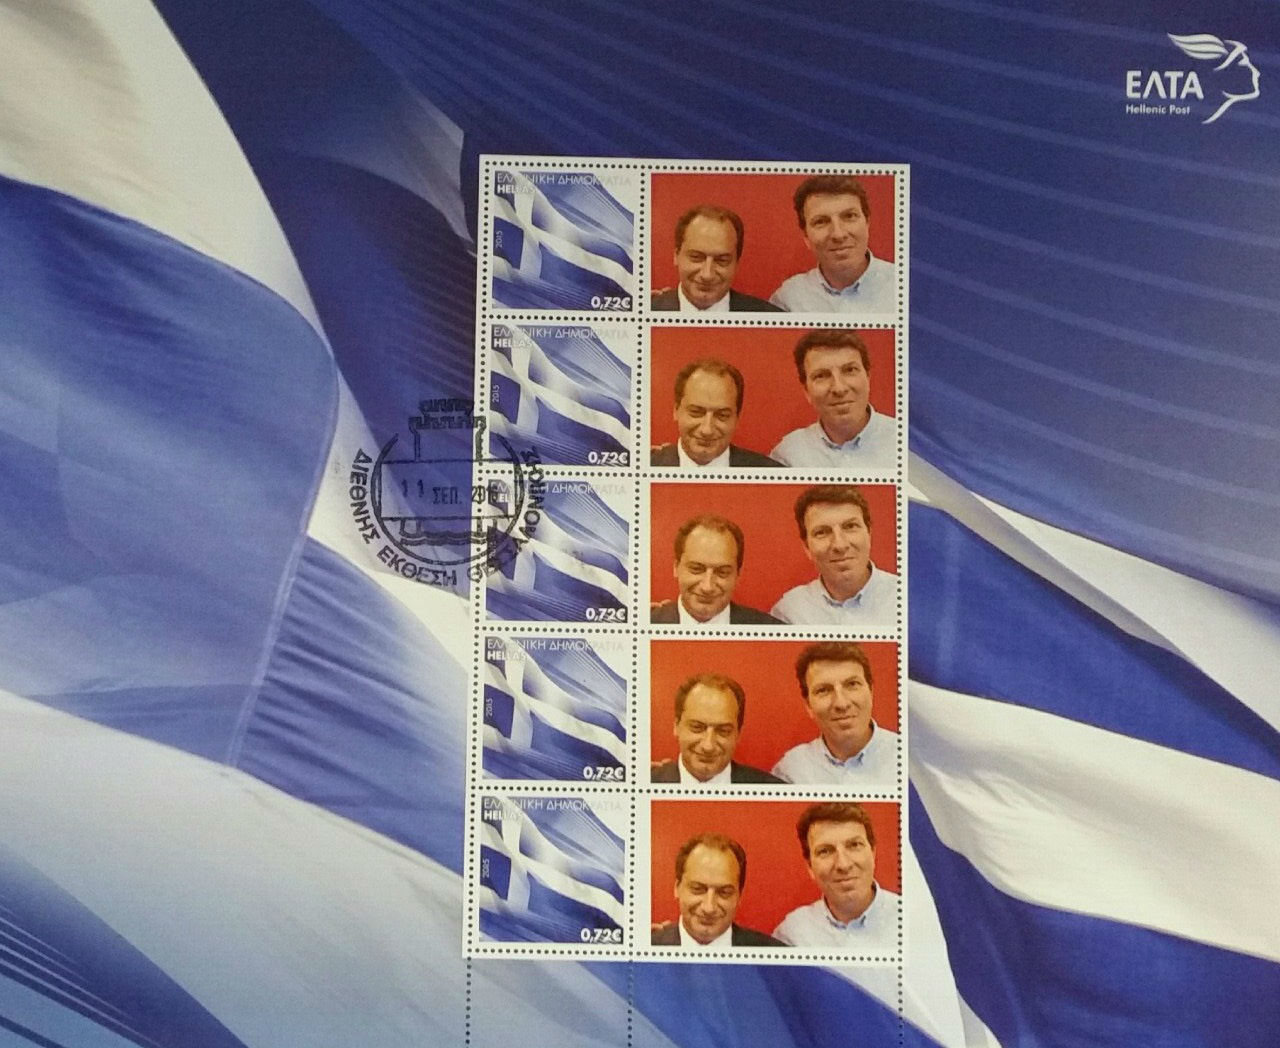 Οι υπουργοί που έγιναν γραμματόσημα (εικόνα)